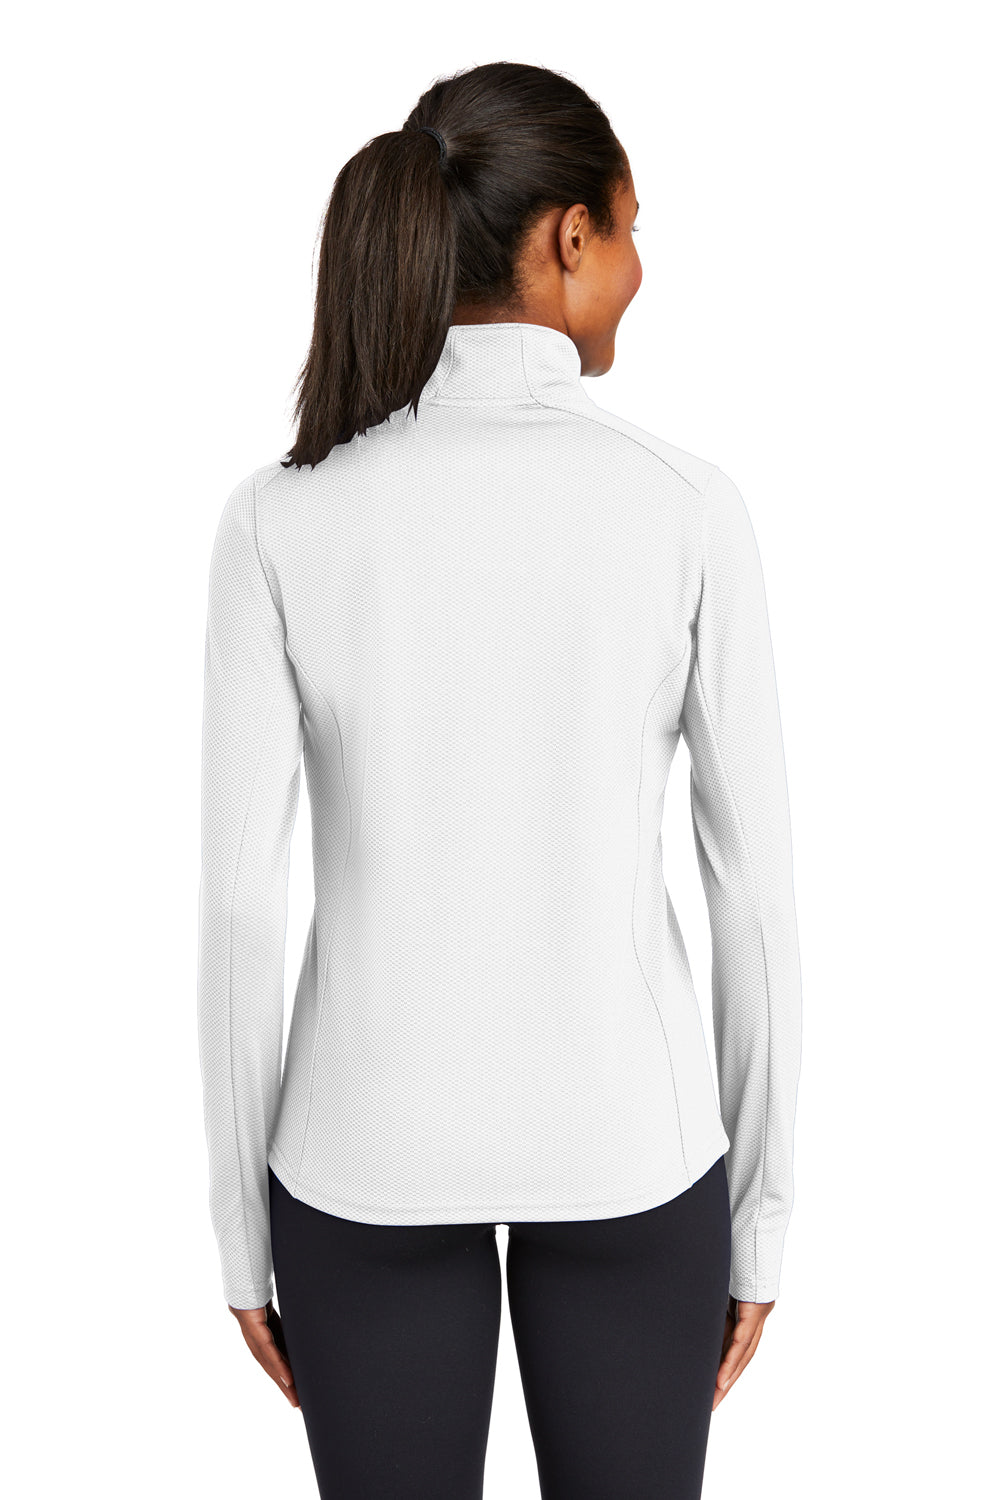 Sport-Tek LST860 Womens Sport-Wick Moisture Wicking 1/4 Zip Sweatshirt White Back